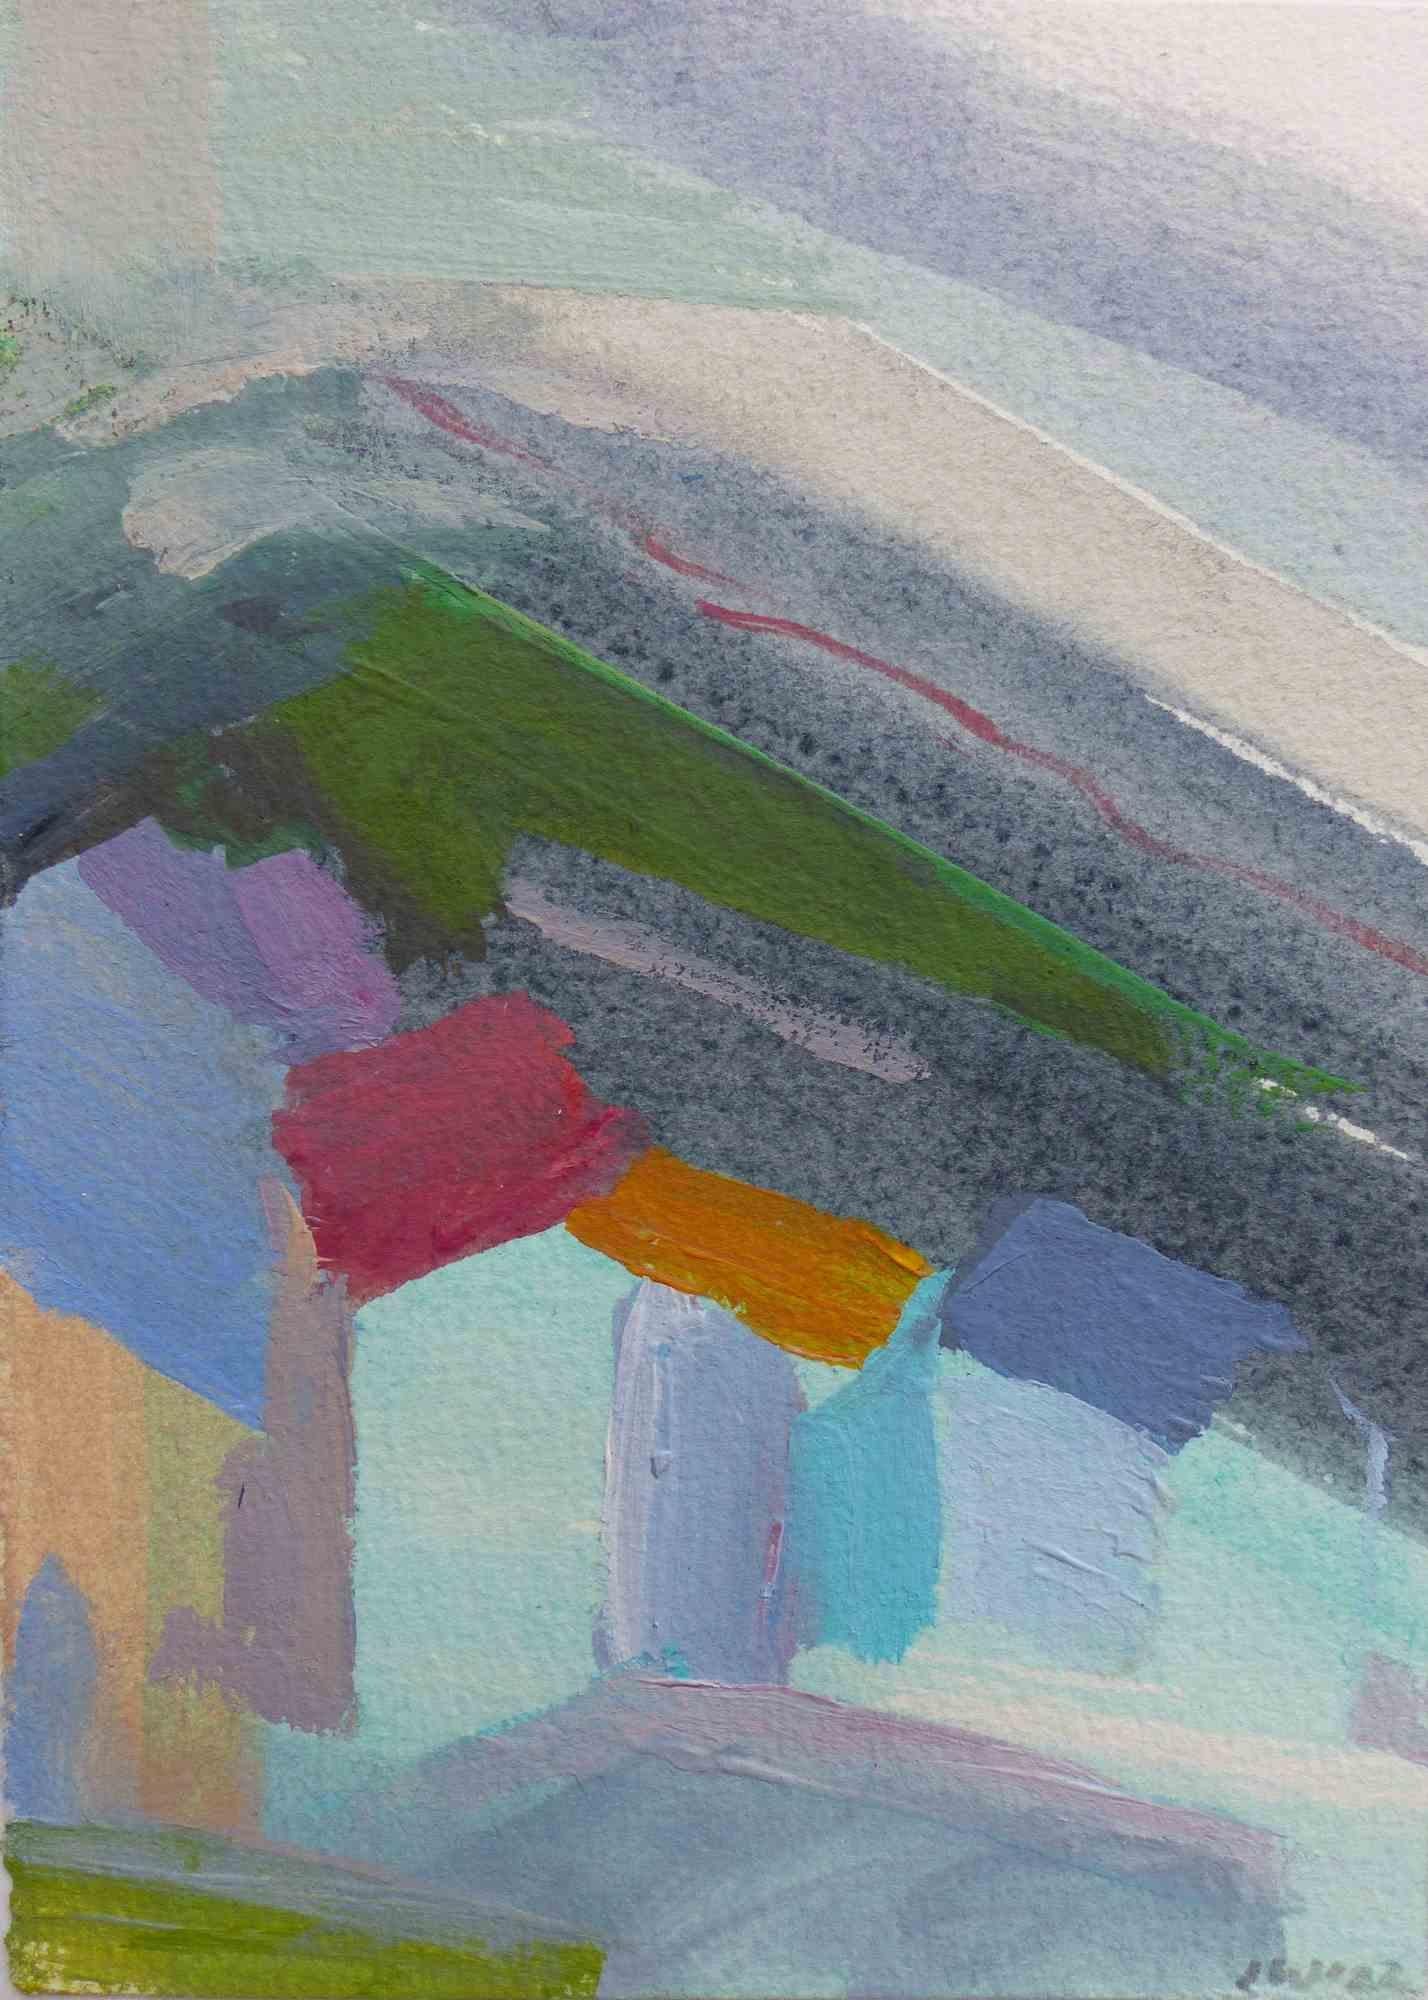 Les paysages peints par Johanna Winkelgrund dans les années 2020 sont abstraits et figuratifs.

Suivant la seule couleur, elle se passe ici de la figure humaine.

Ce n'est qu'à quelques exceptions près que l'on trouve des traces d'existence